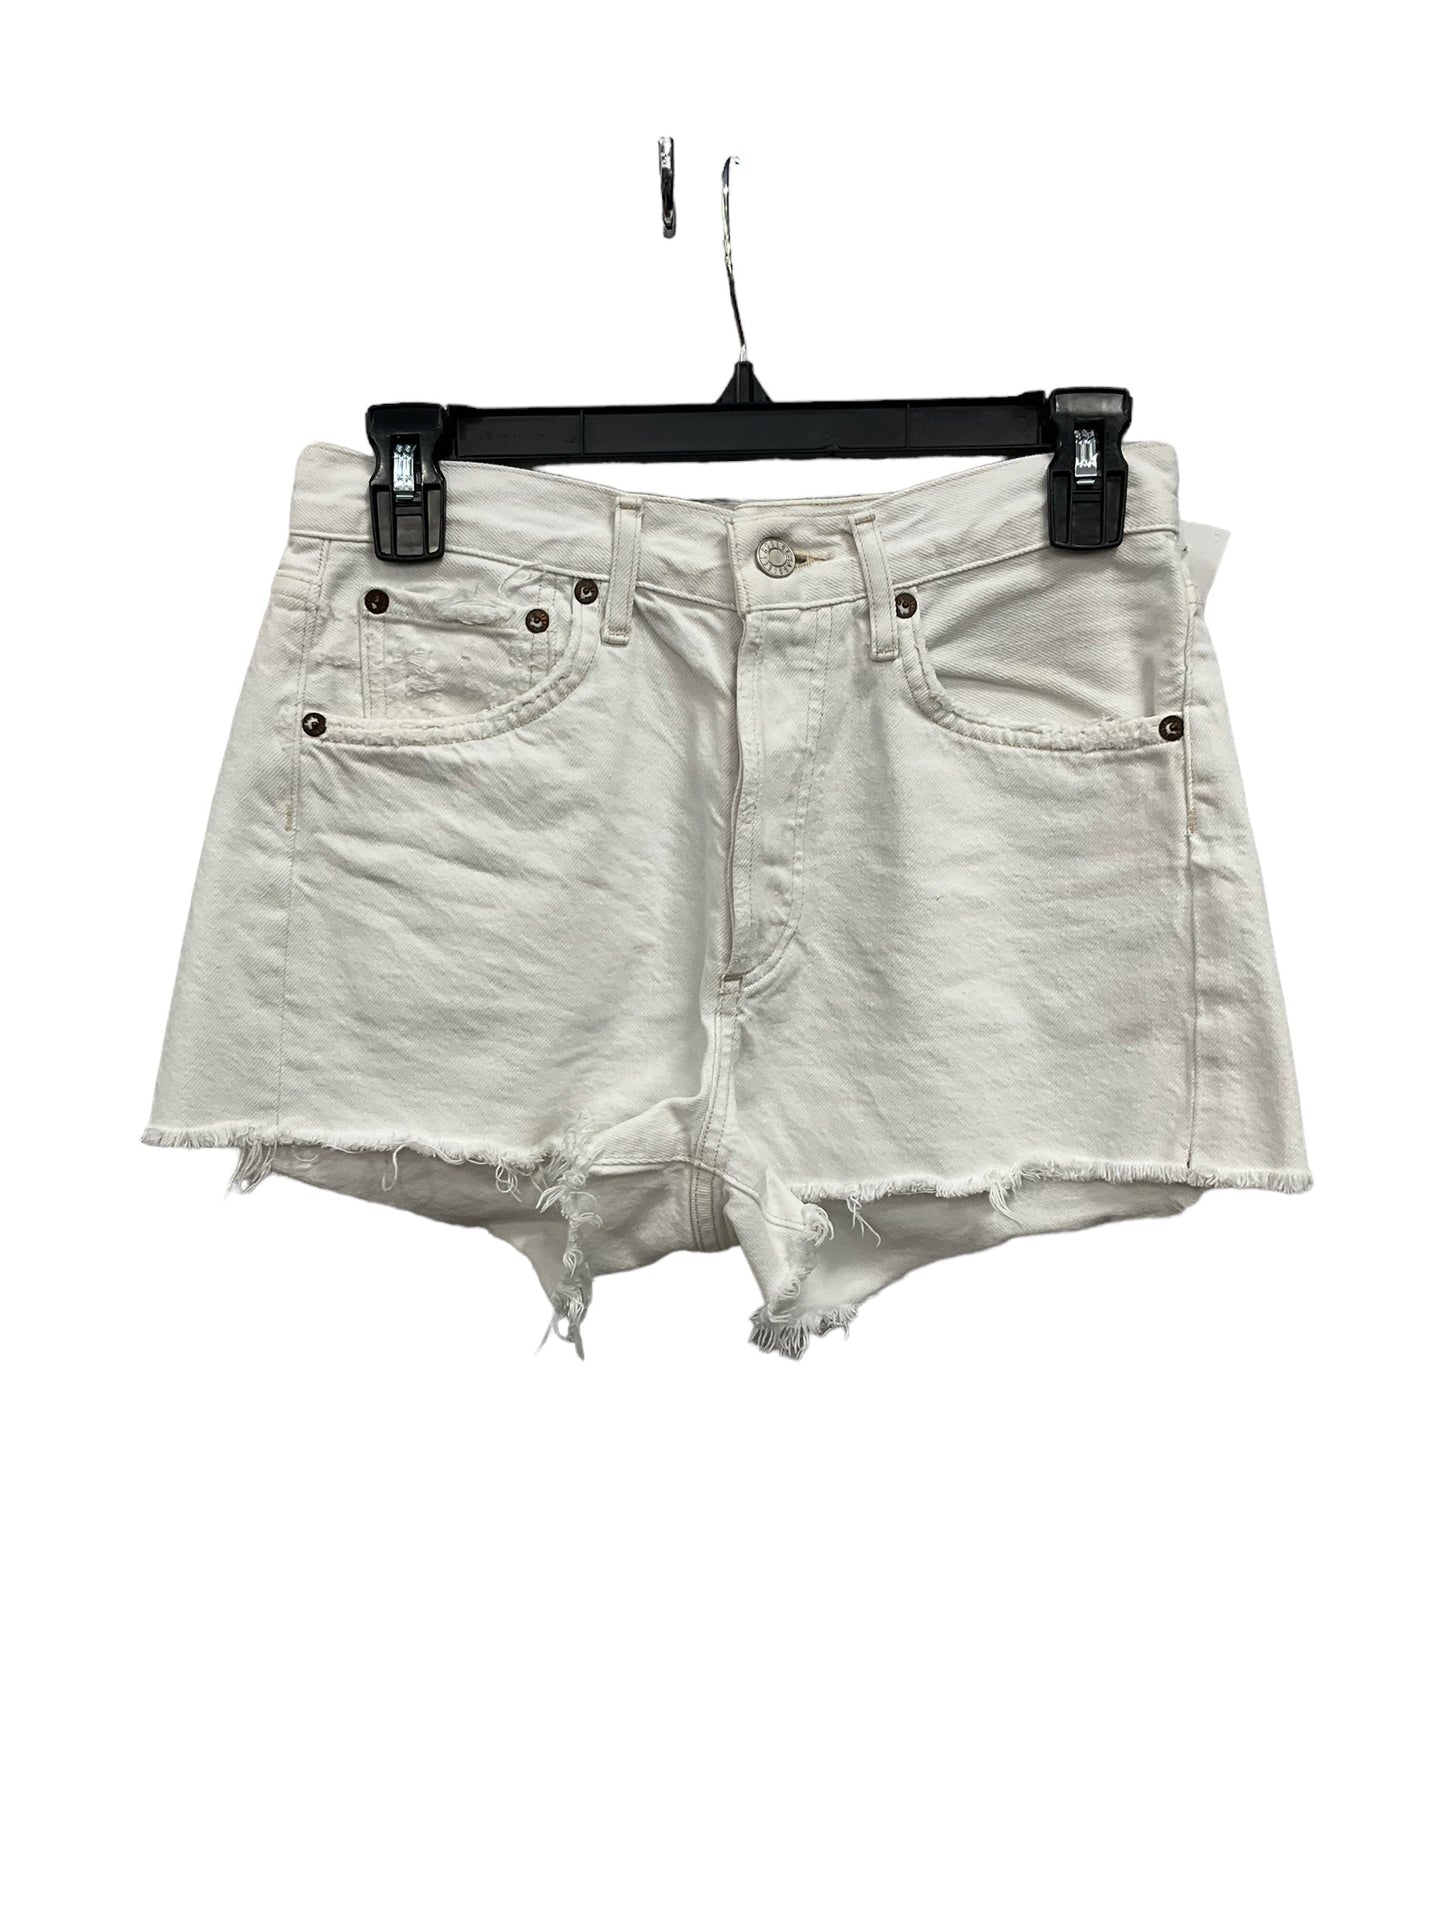 White Shorts Agolde, Size 0